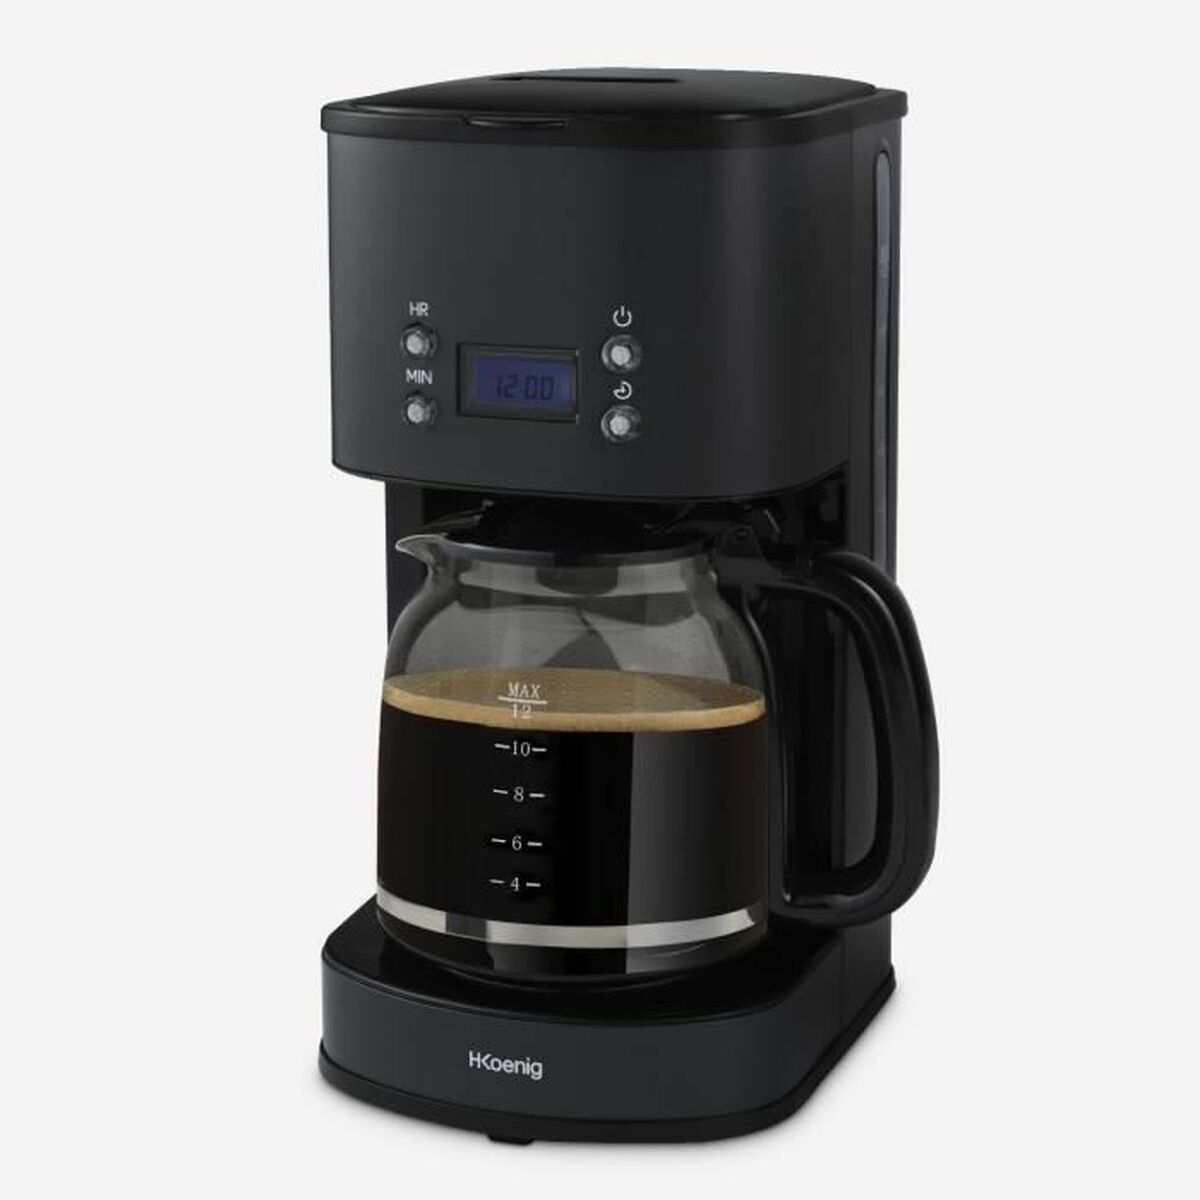 Filterkaffeemaschine Hkoenig Schwarz 1000 W - CA International 